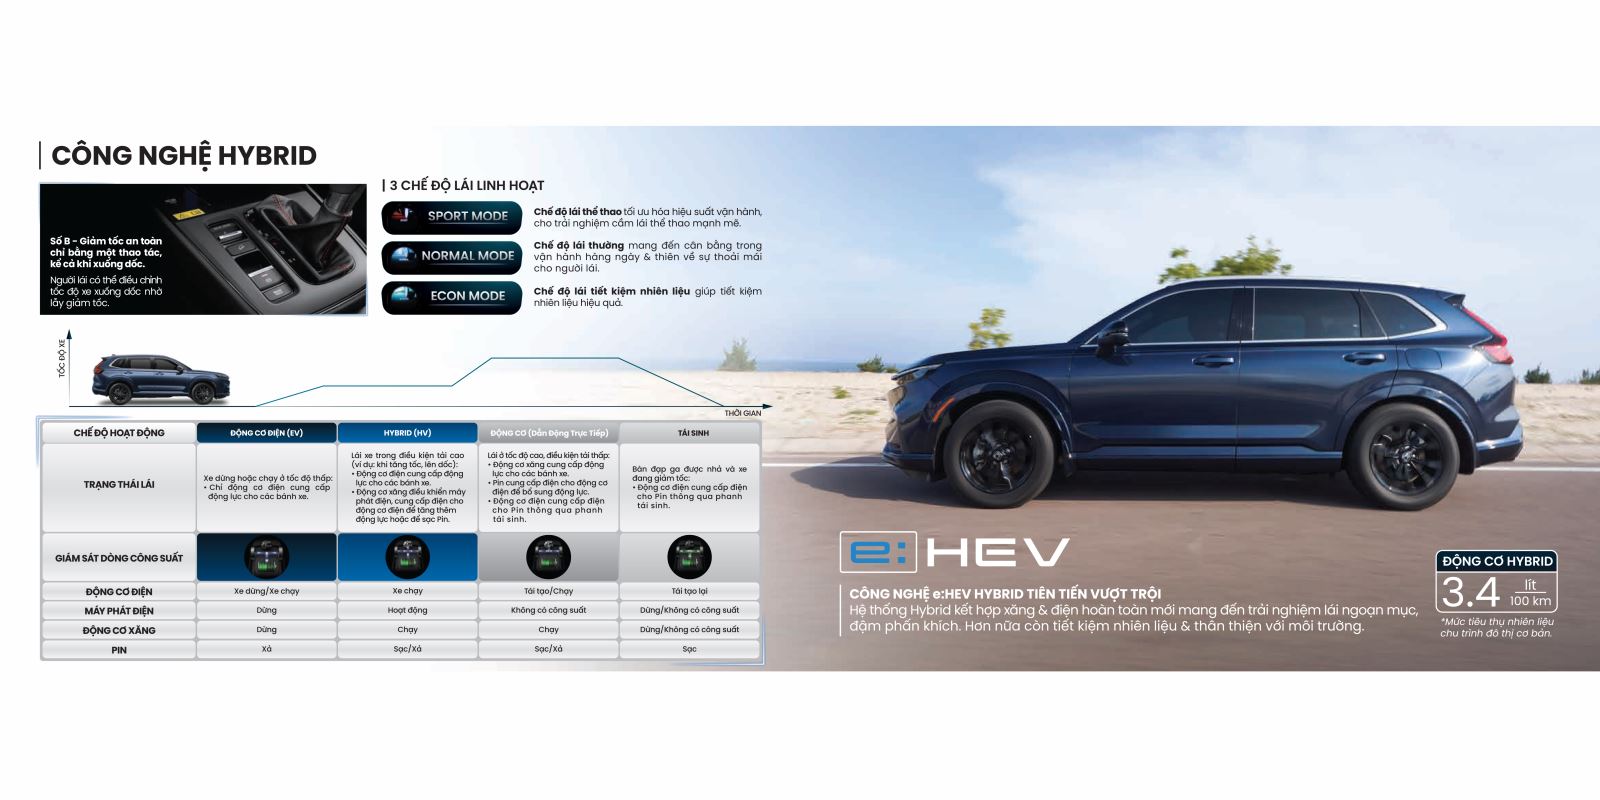 Hệ thống động cơ Hybrid thân thiện với môi trường của Honda CR-V